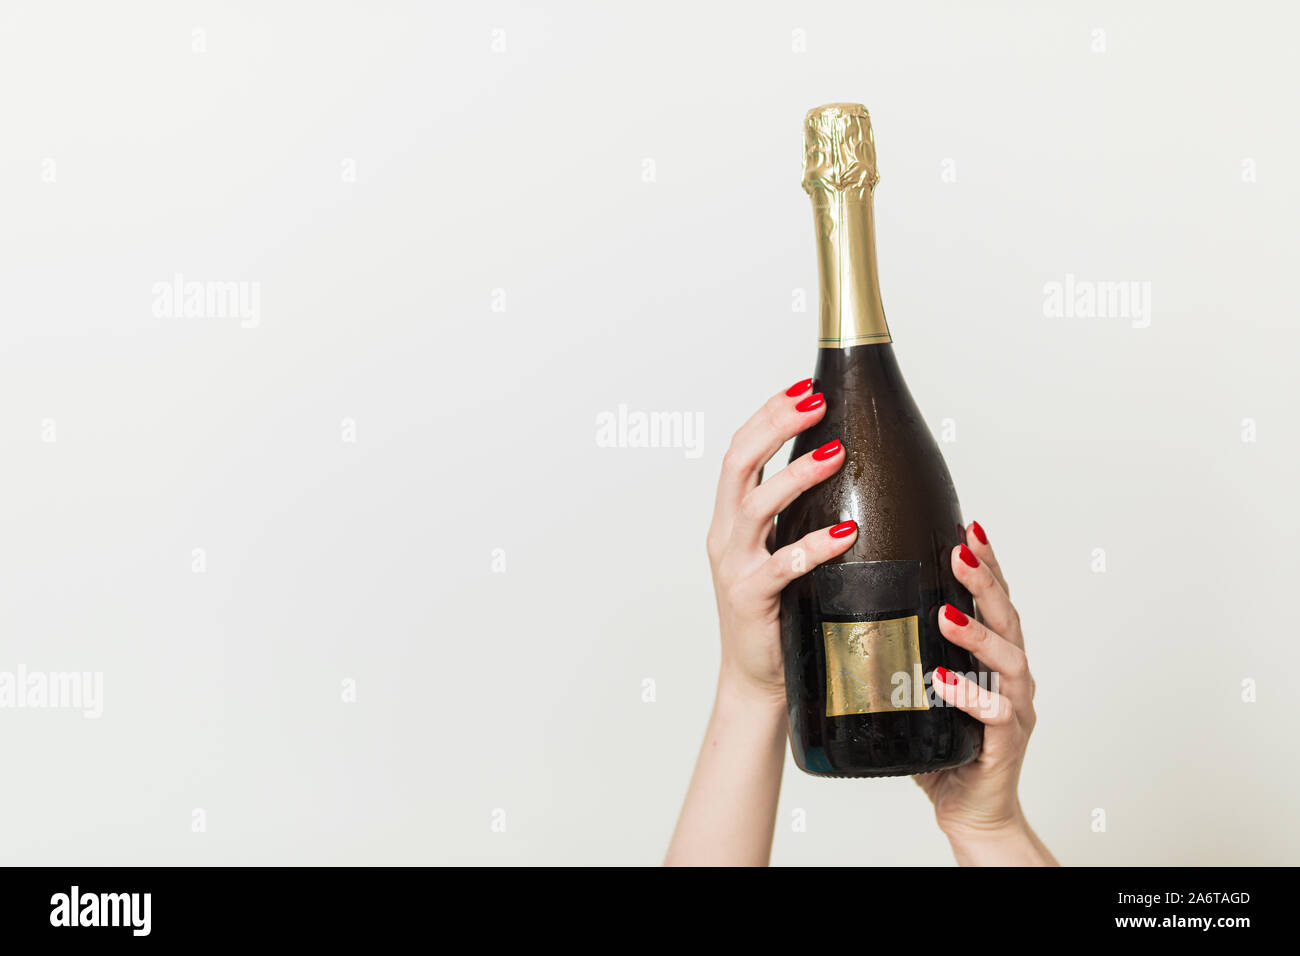 Bouteille de champagne sur fond bleu. Mise à plat. Concept Célébration parti Banque D'Images